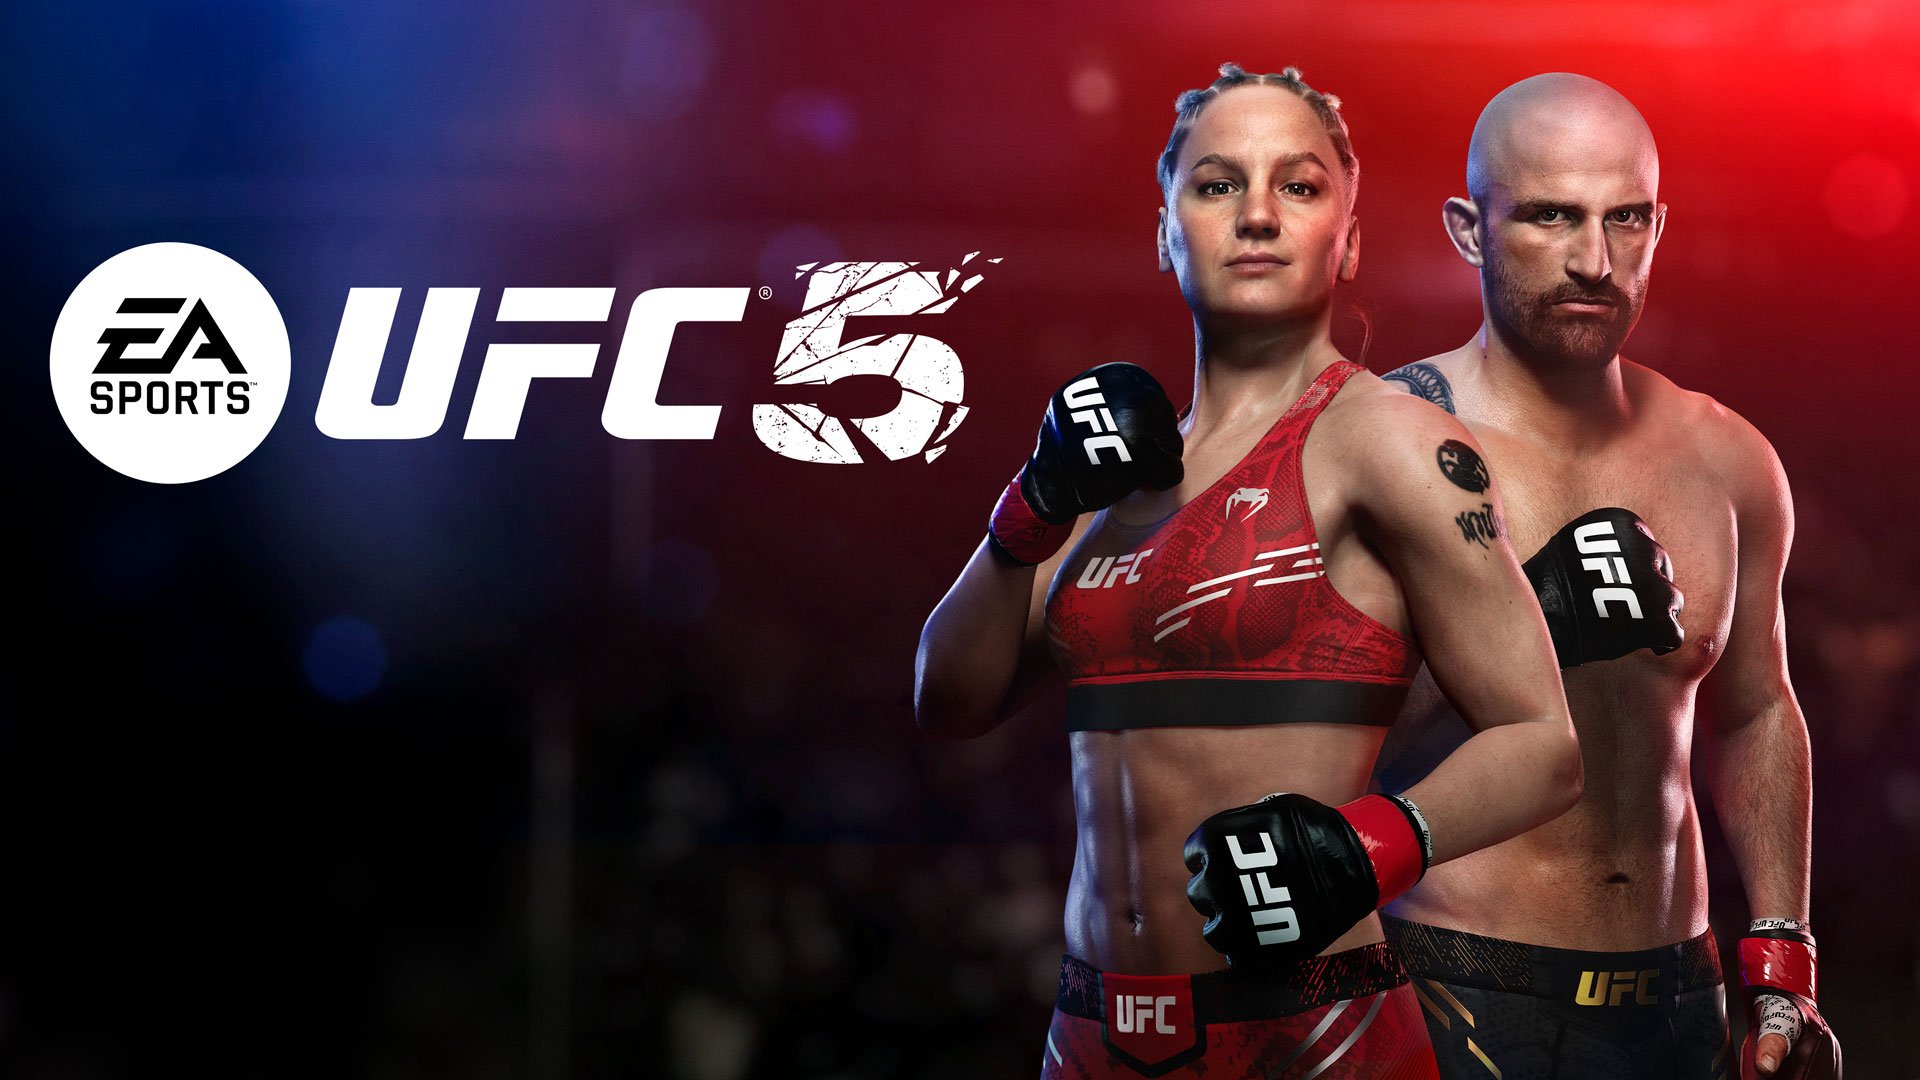 EA UFC 5 promete ser o jogo mais real da franquia